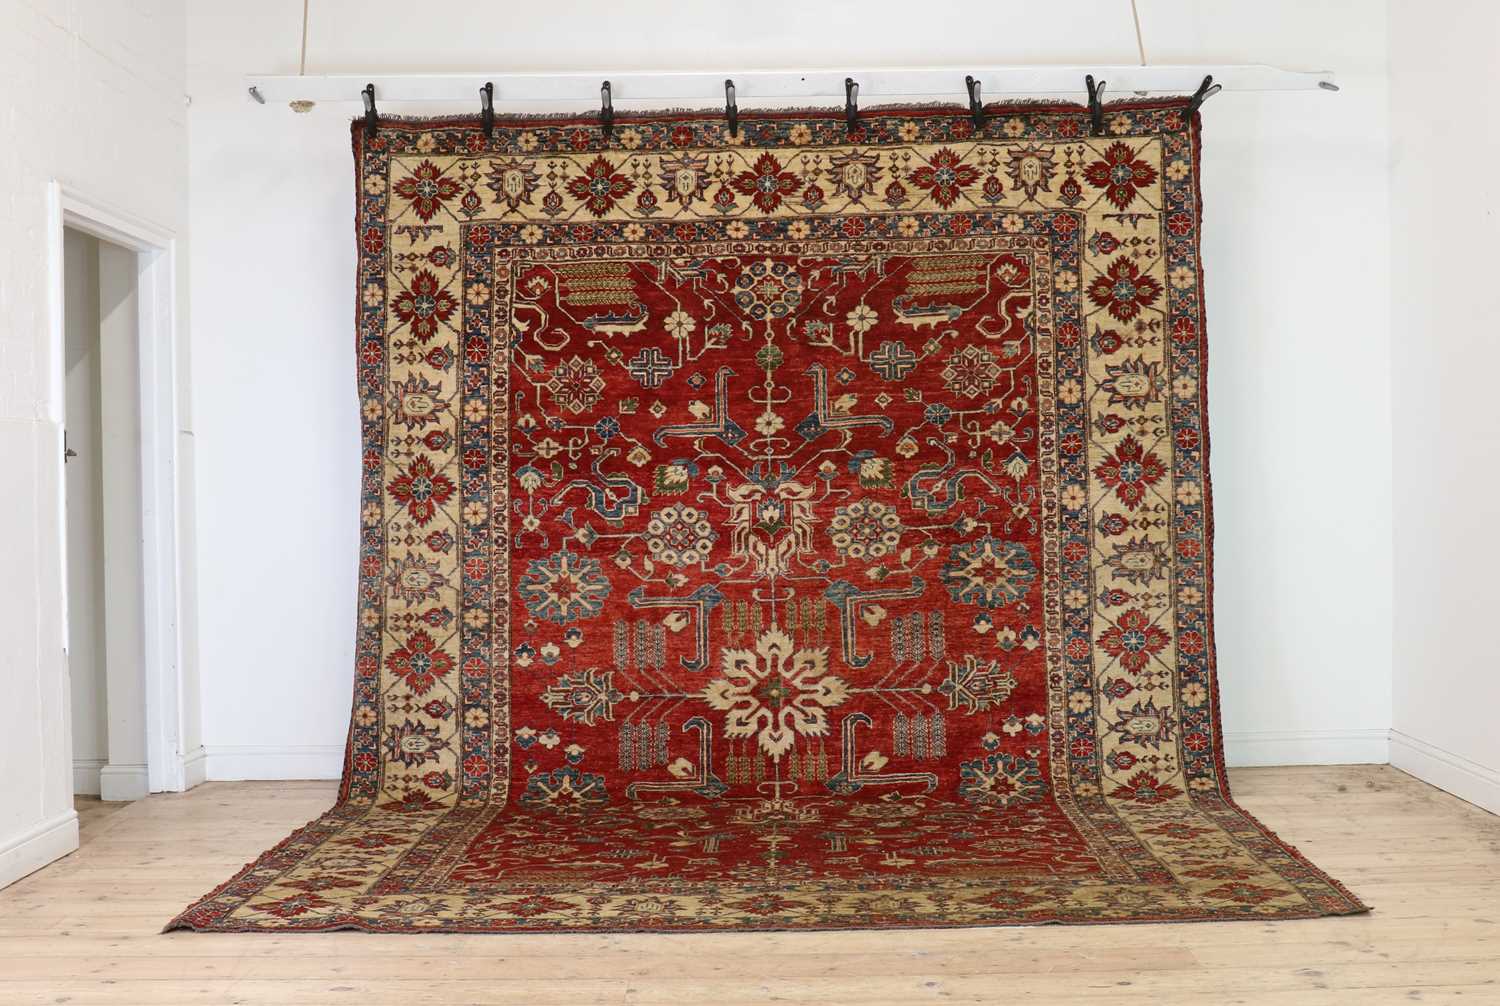 A Kazak carpet